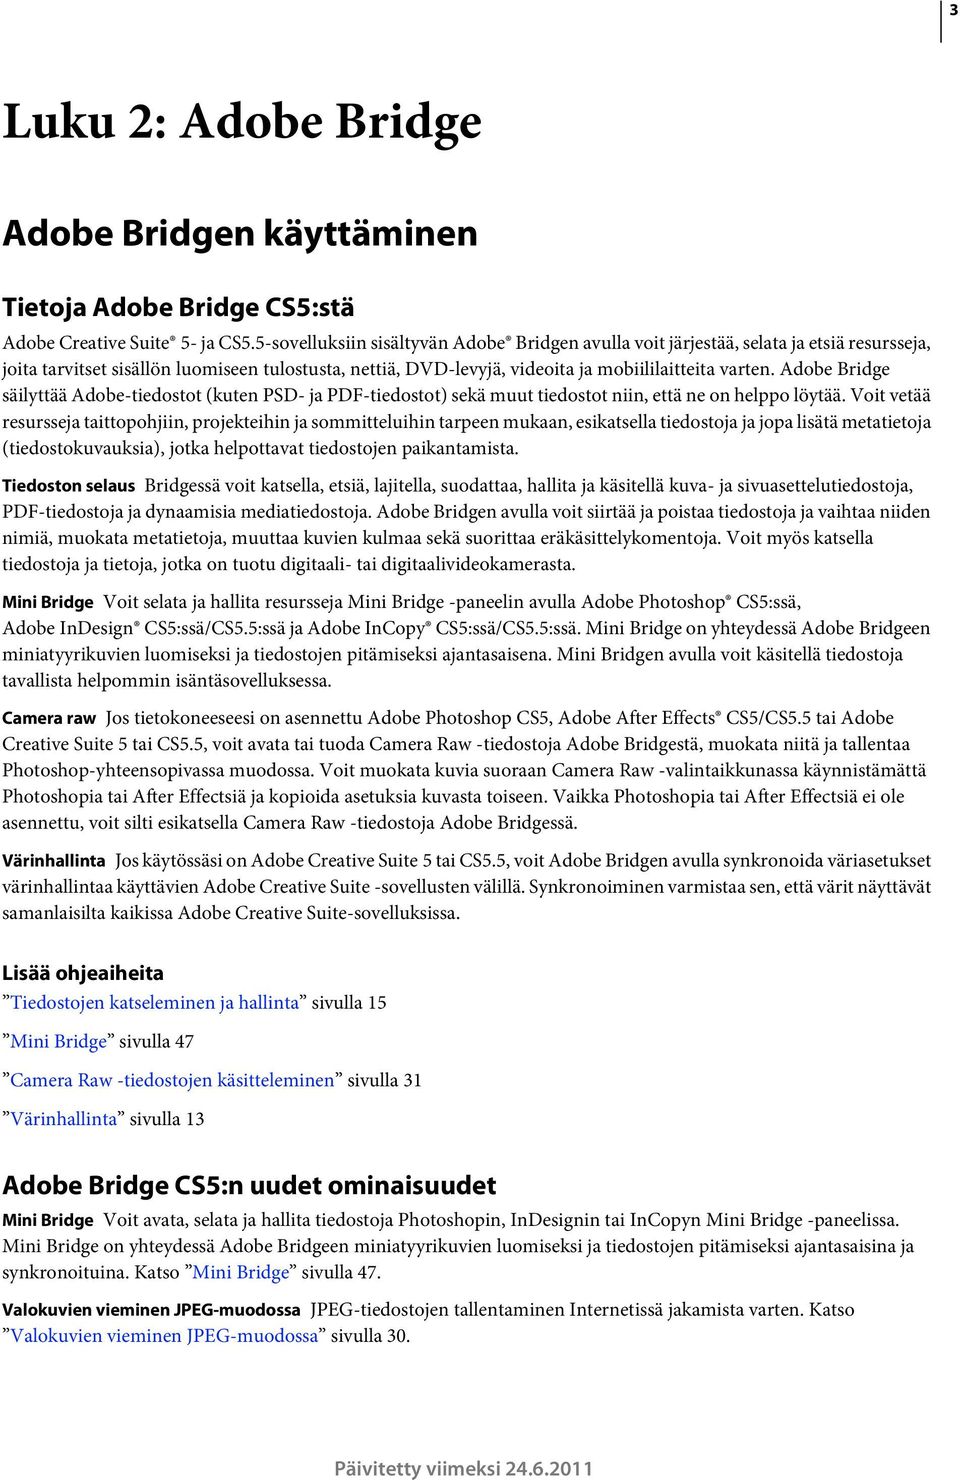 Adobe Bridge säilyttää Adobe-tiedostot (kuten PSD- ja PDF-tiedostot) sekä muut tiedostot niin, että ne on helppo löytää.